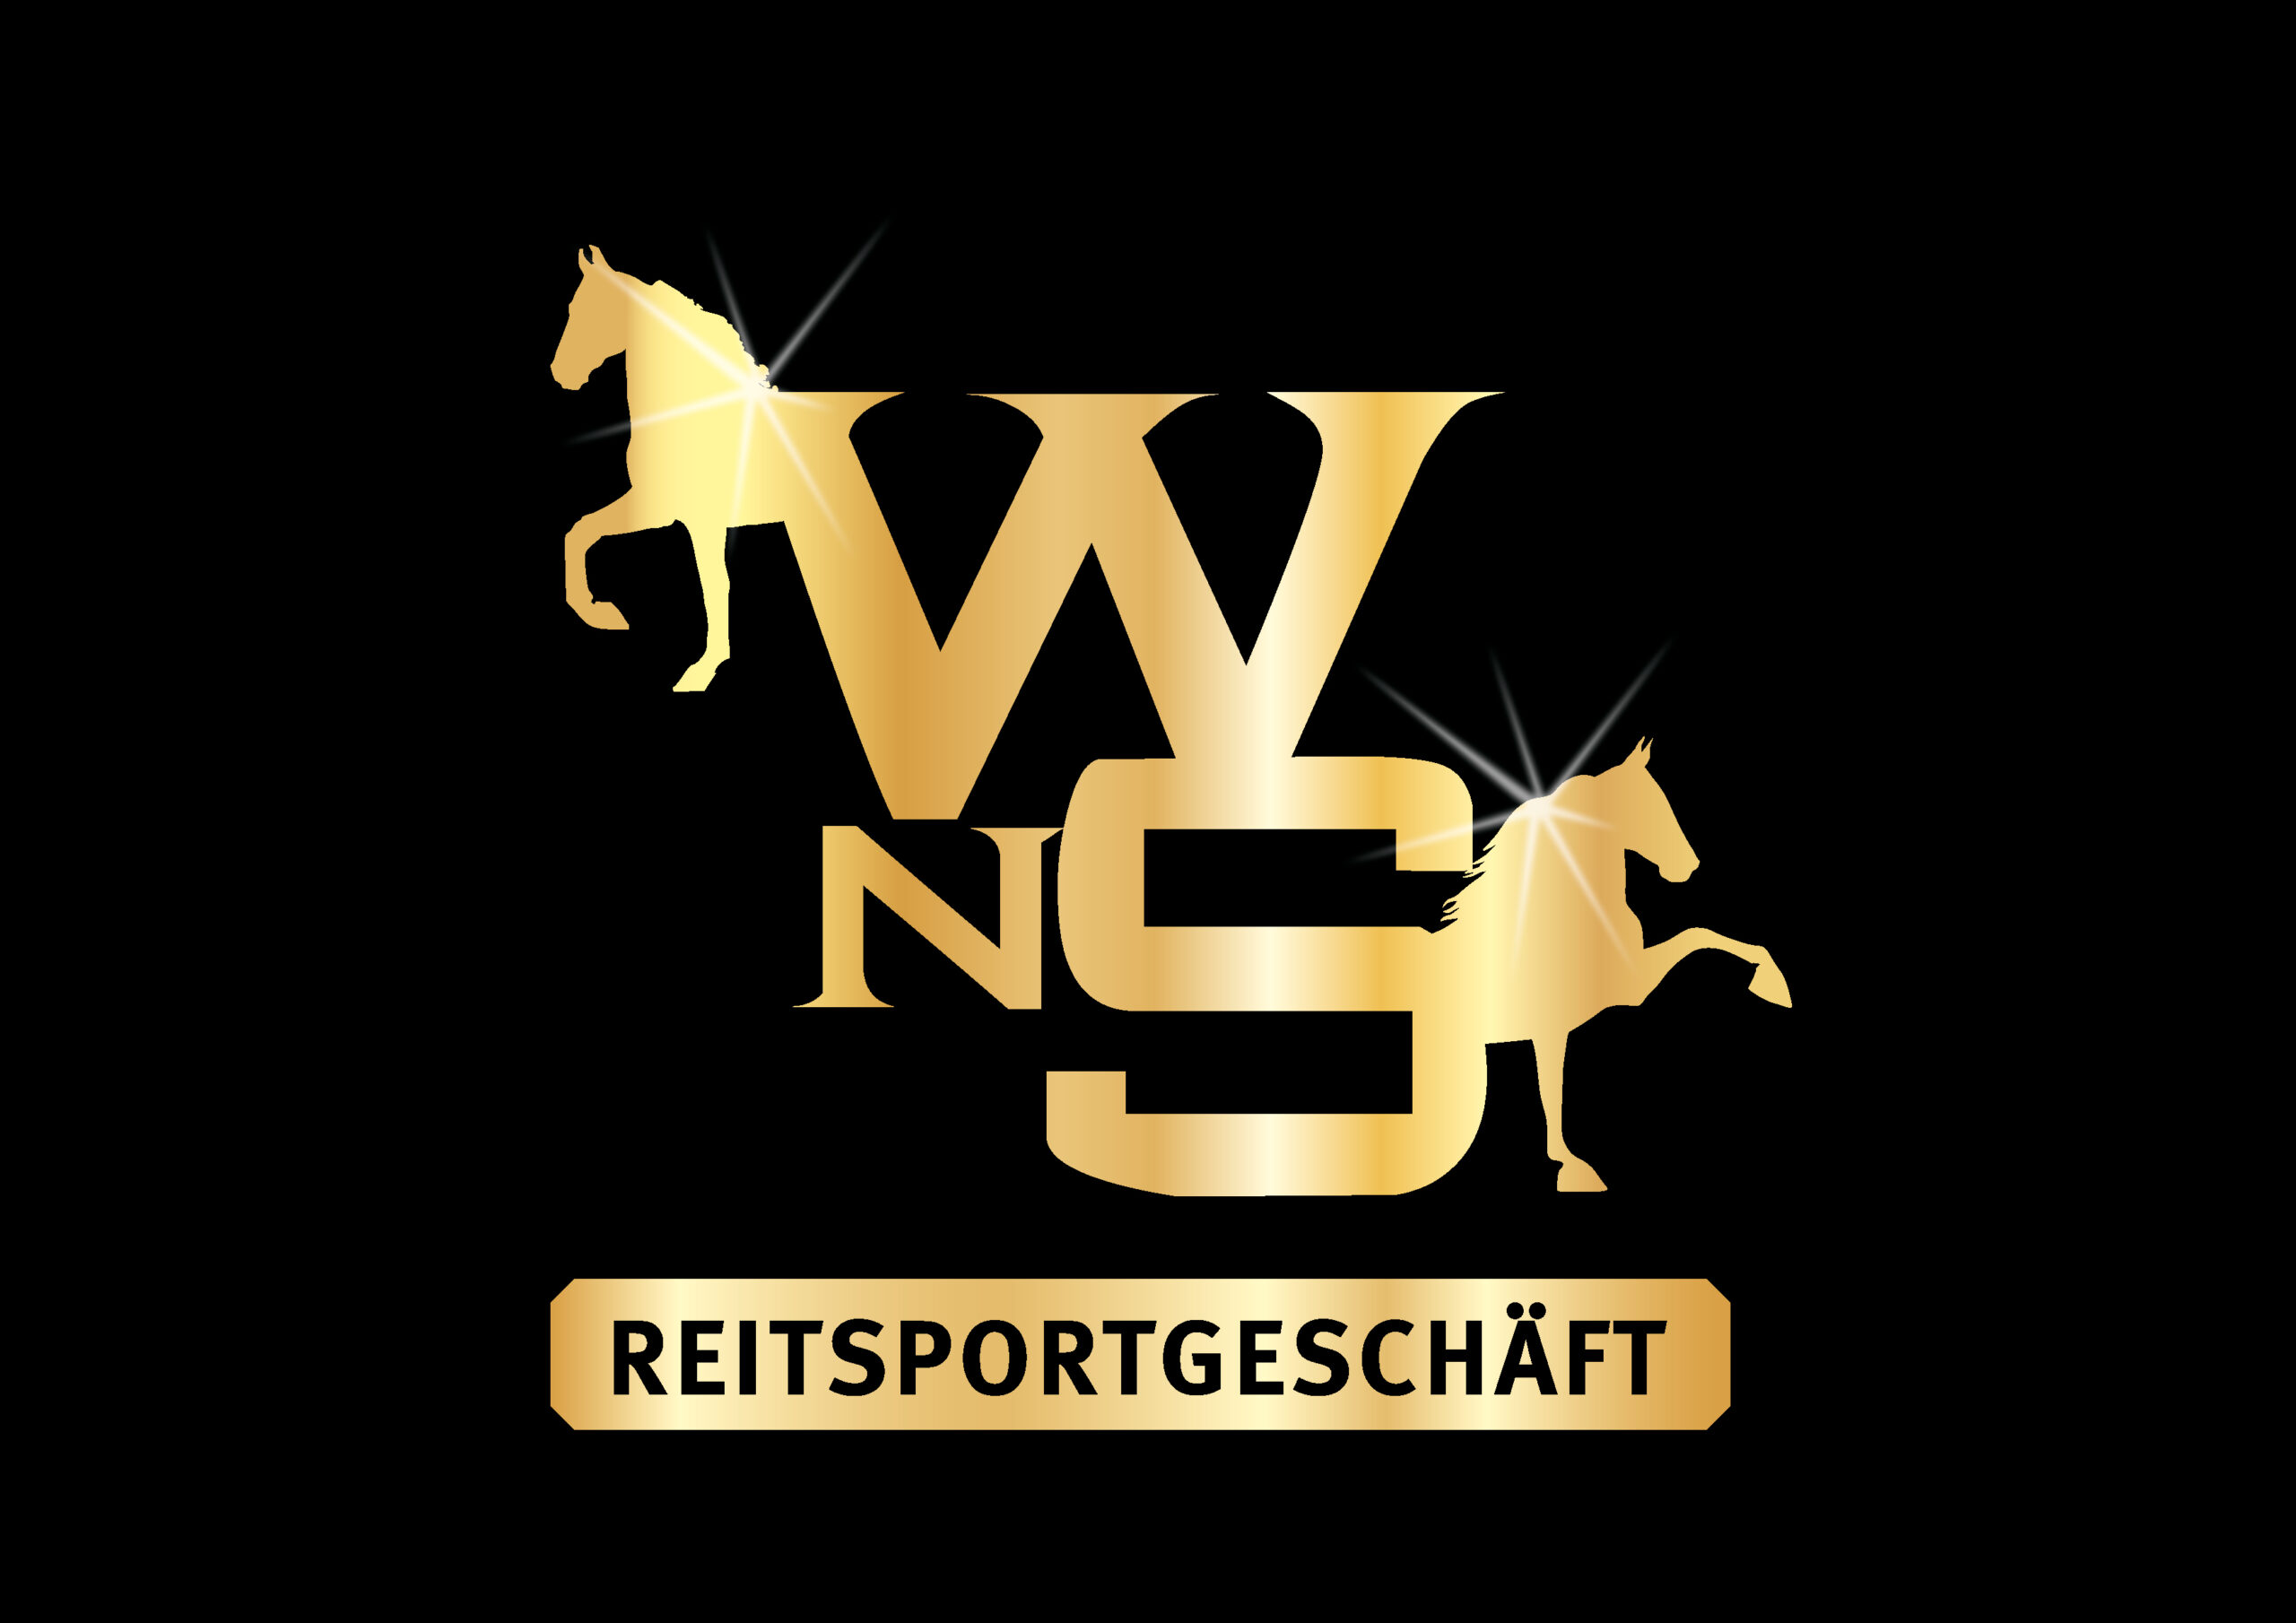 WNS_Reitsportgeschaeft_gold_schwarz